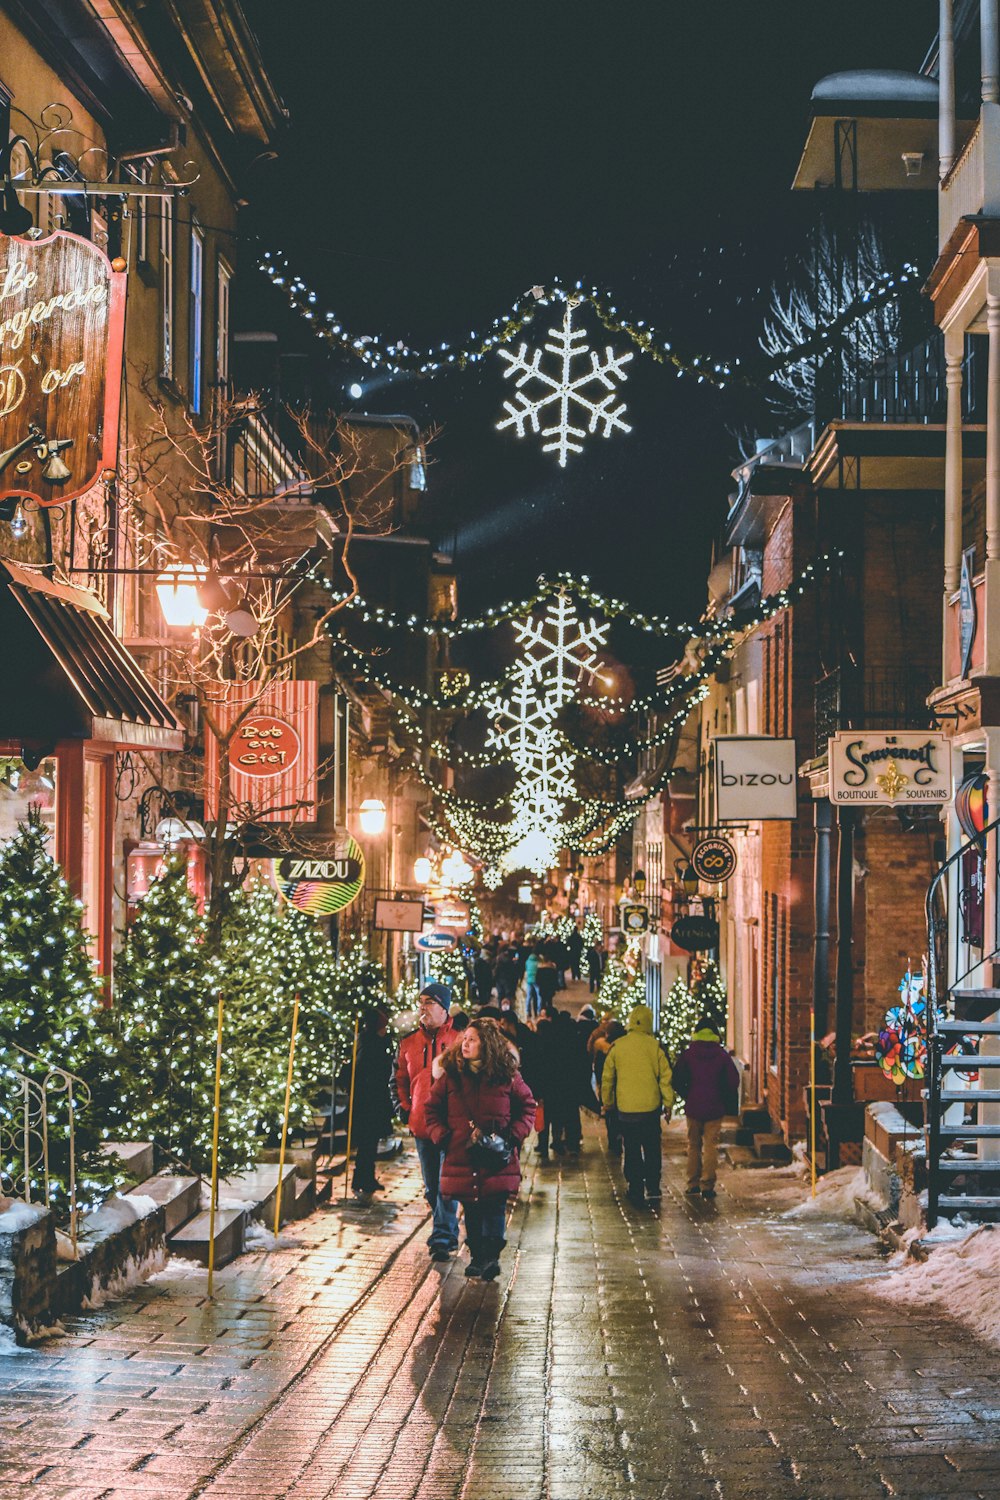 Menschen, die nachts auf der Straße in der Nähe von Weihnachtsbäumen spazieren gehen